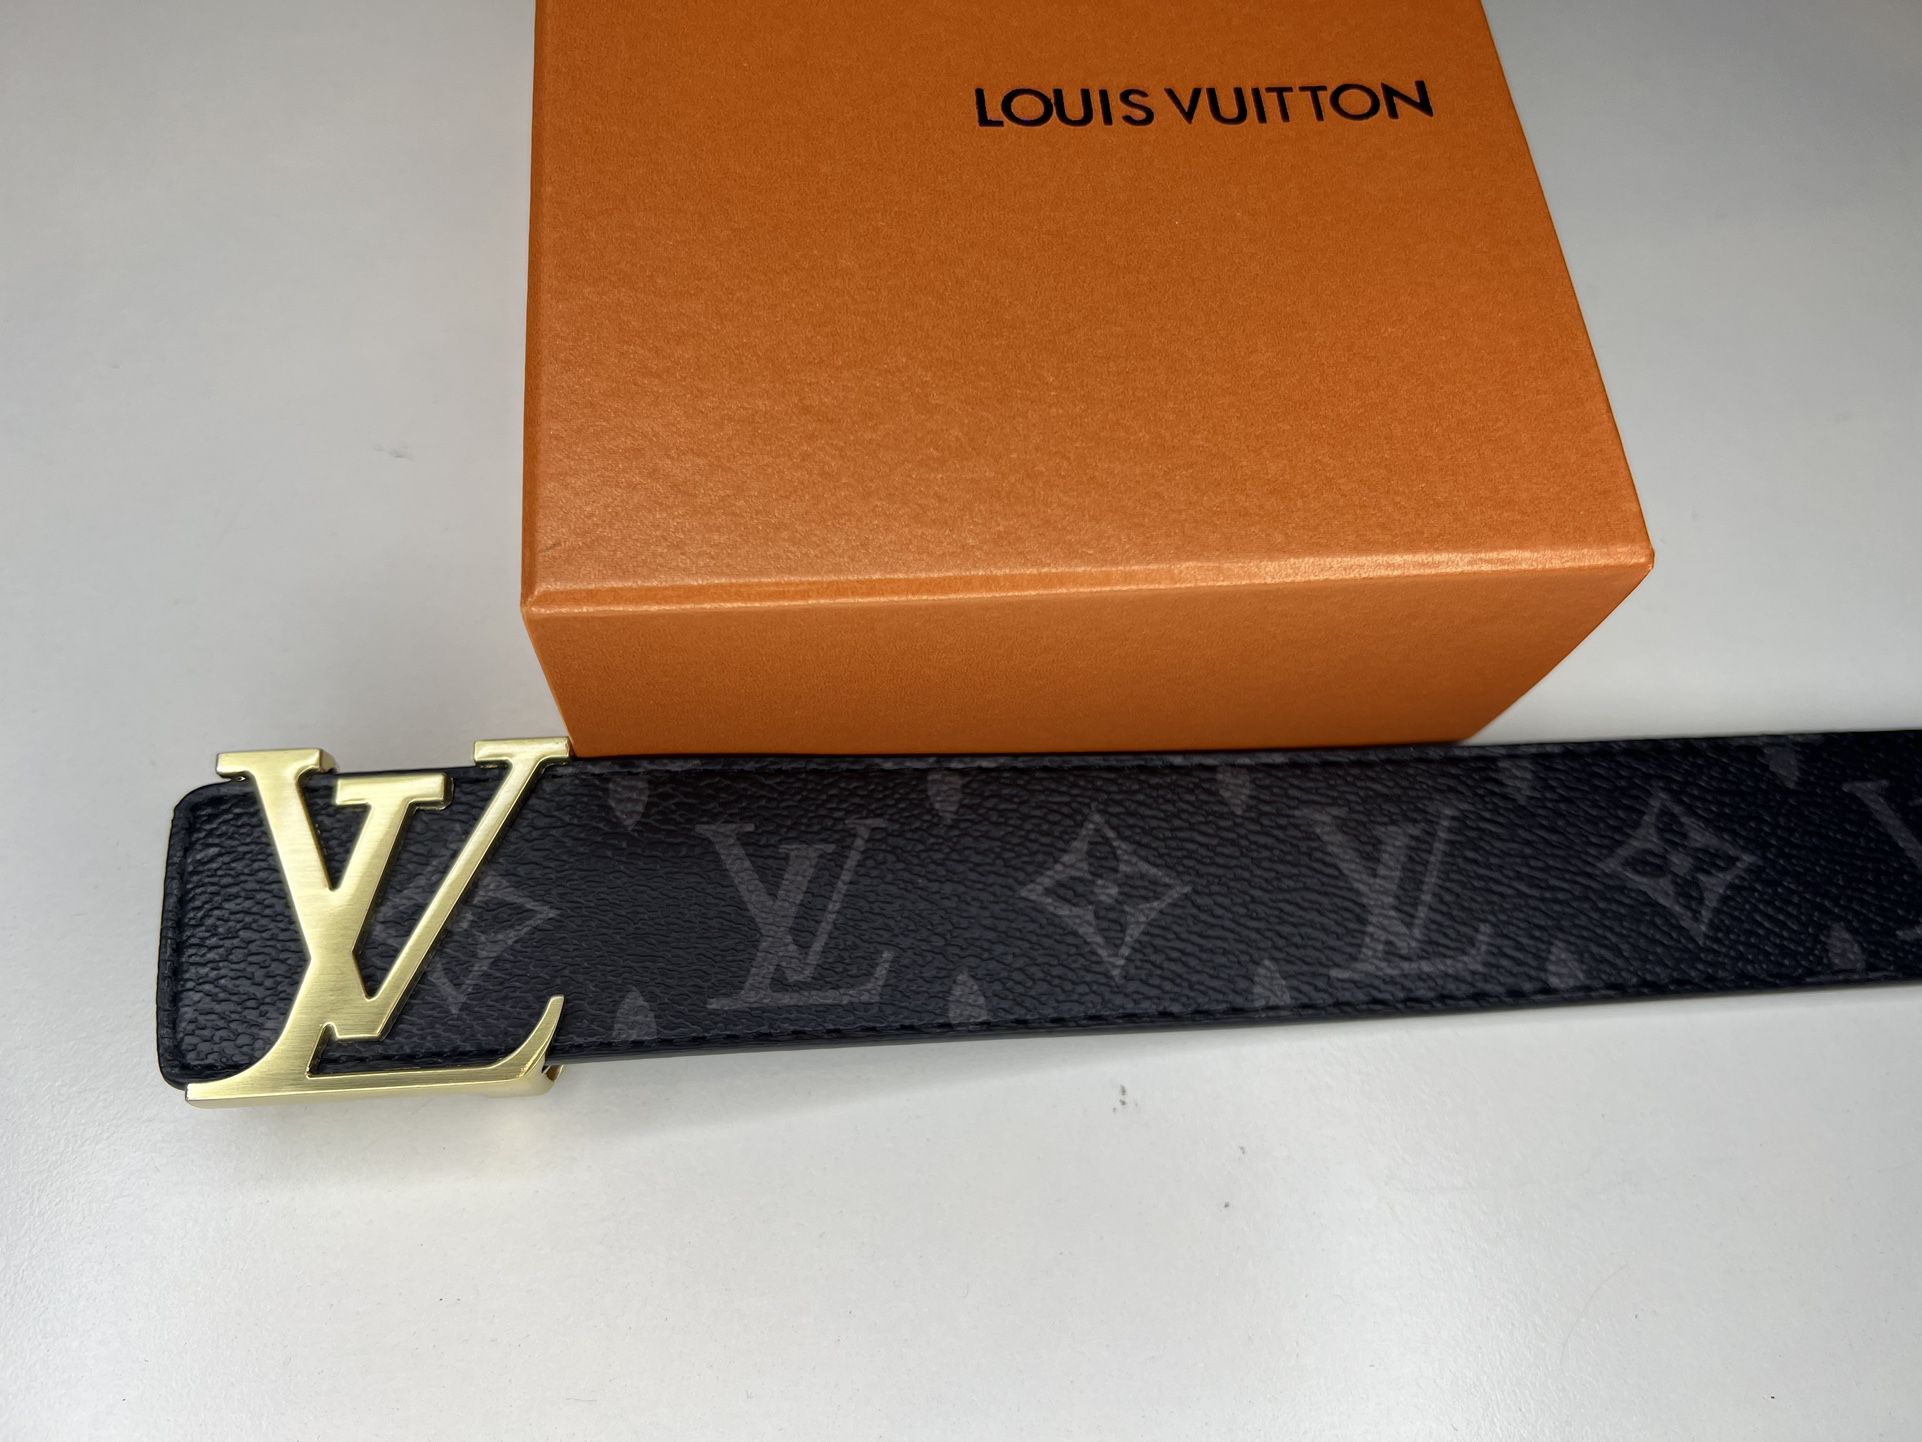 Louis Vuitton Belt for Sale in San Diego, CA - OfferUp